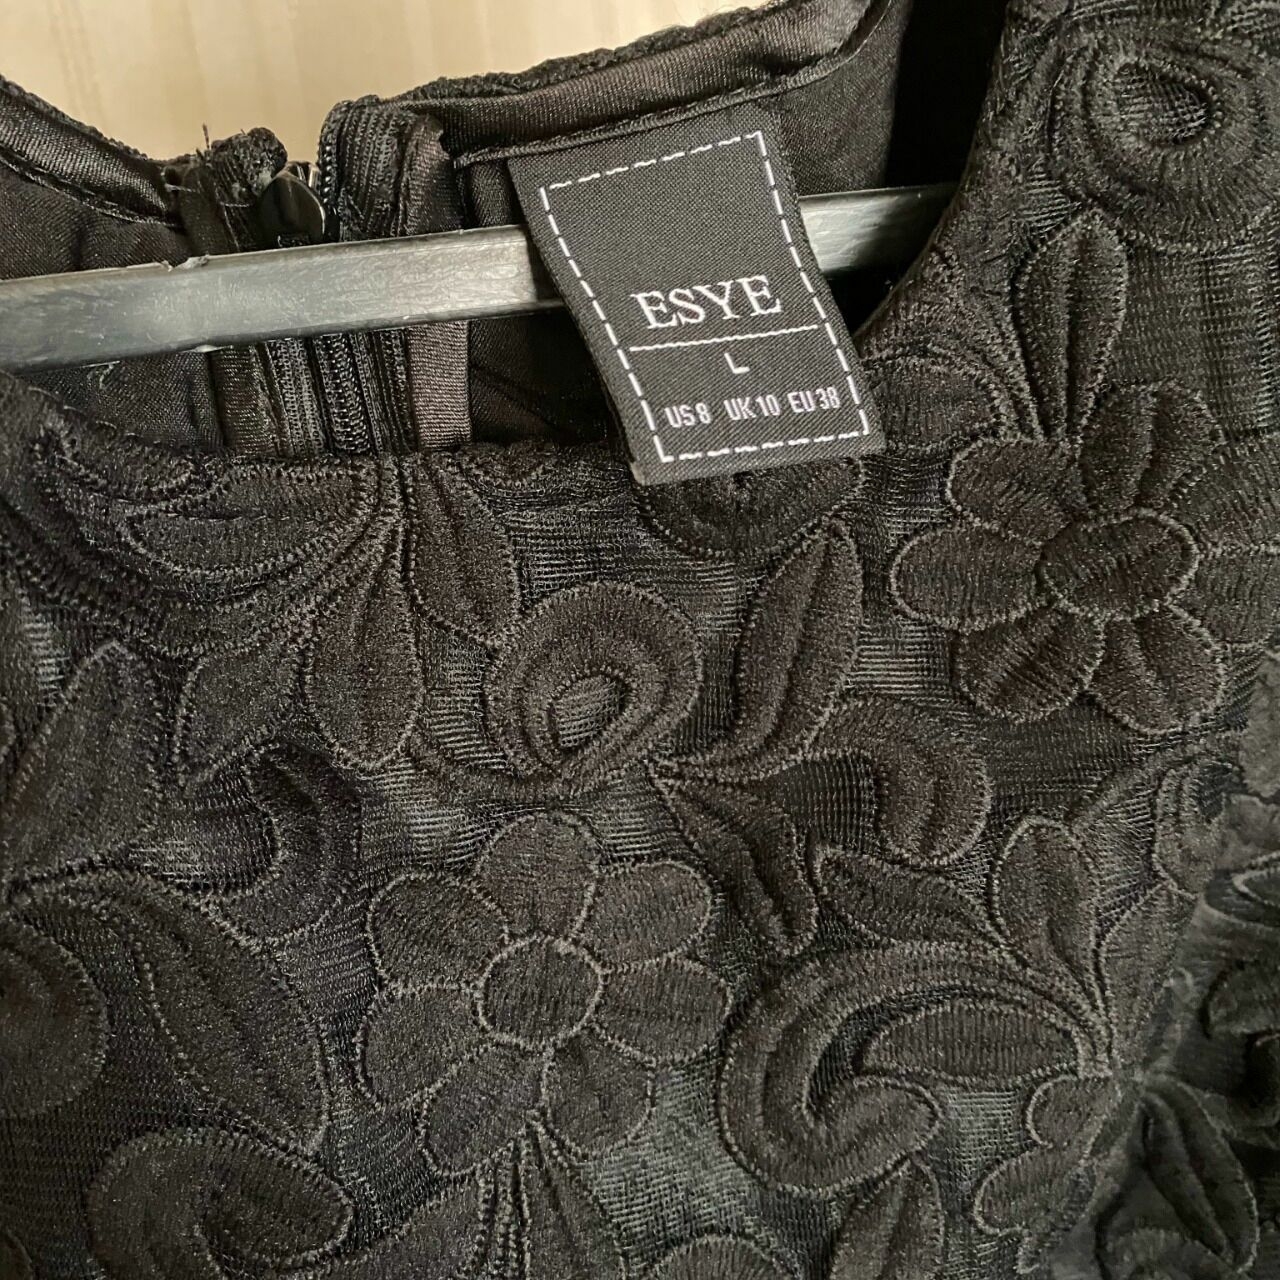 Esye Black Floral Mini Dress